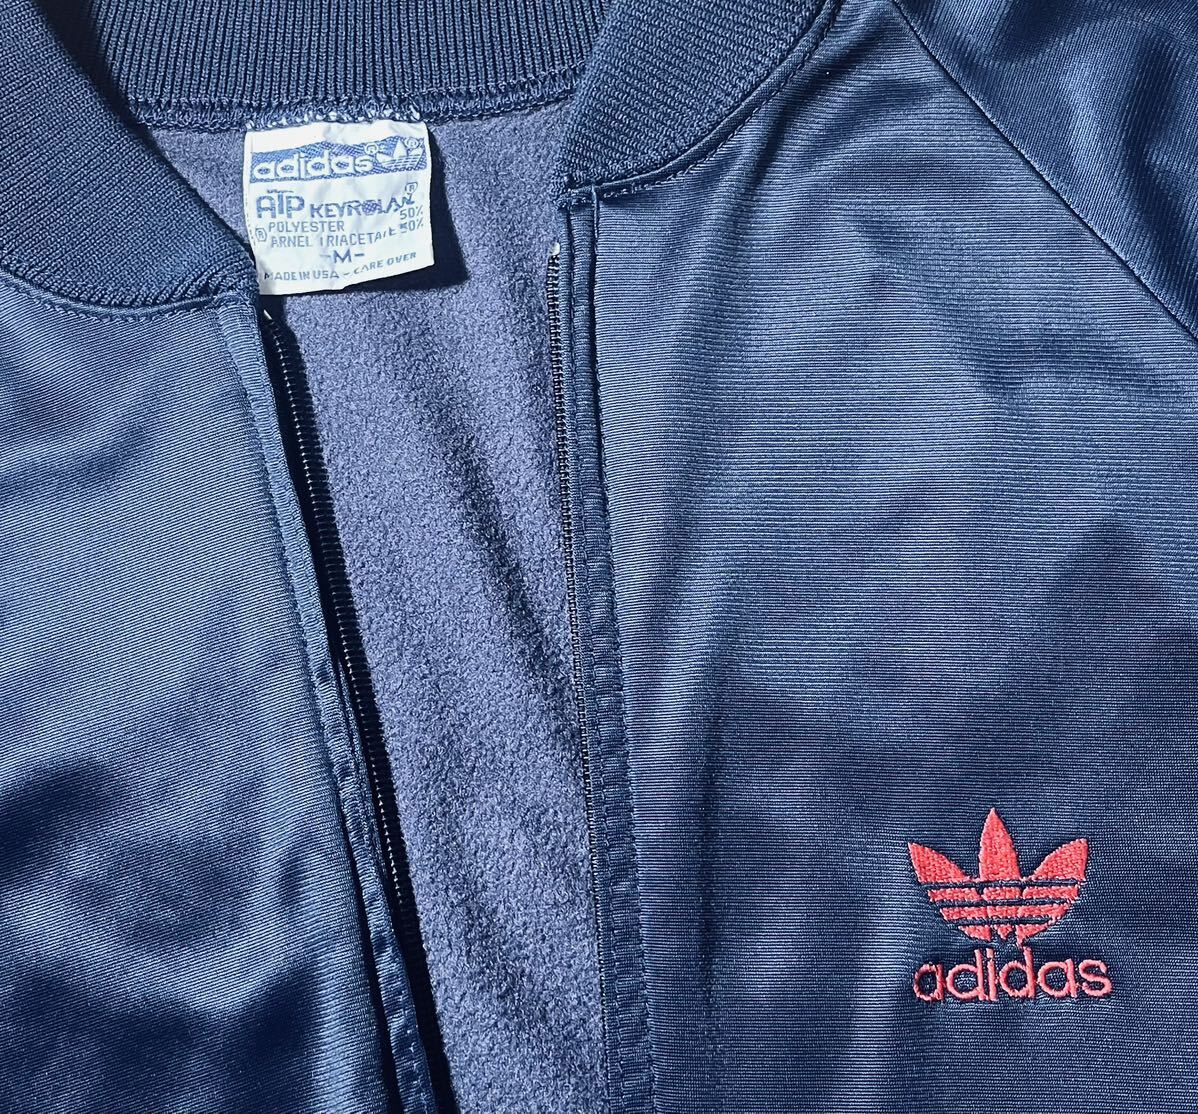 70s 80s ADIDAS ATP Adidas спортивная куртка джерси темно-синий × красный KEYROLAN USA производства yons "надеты" 